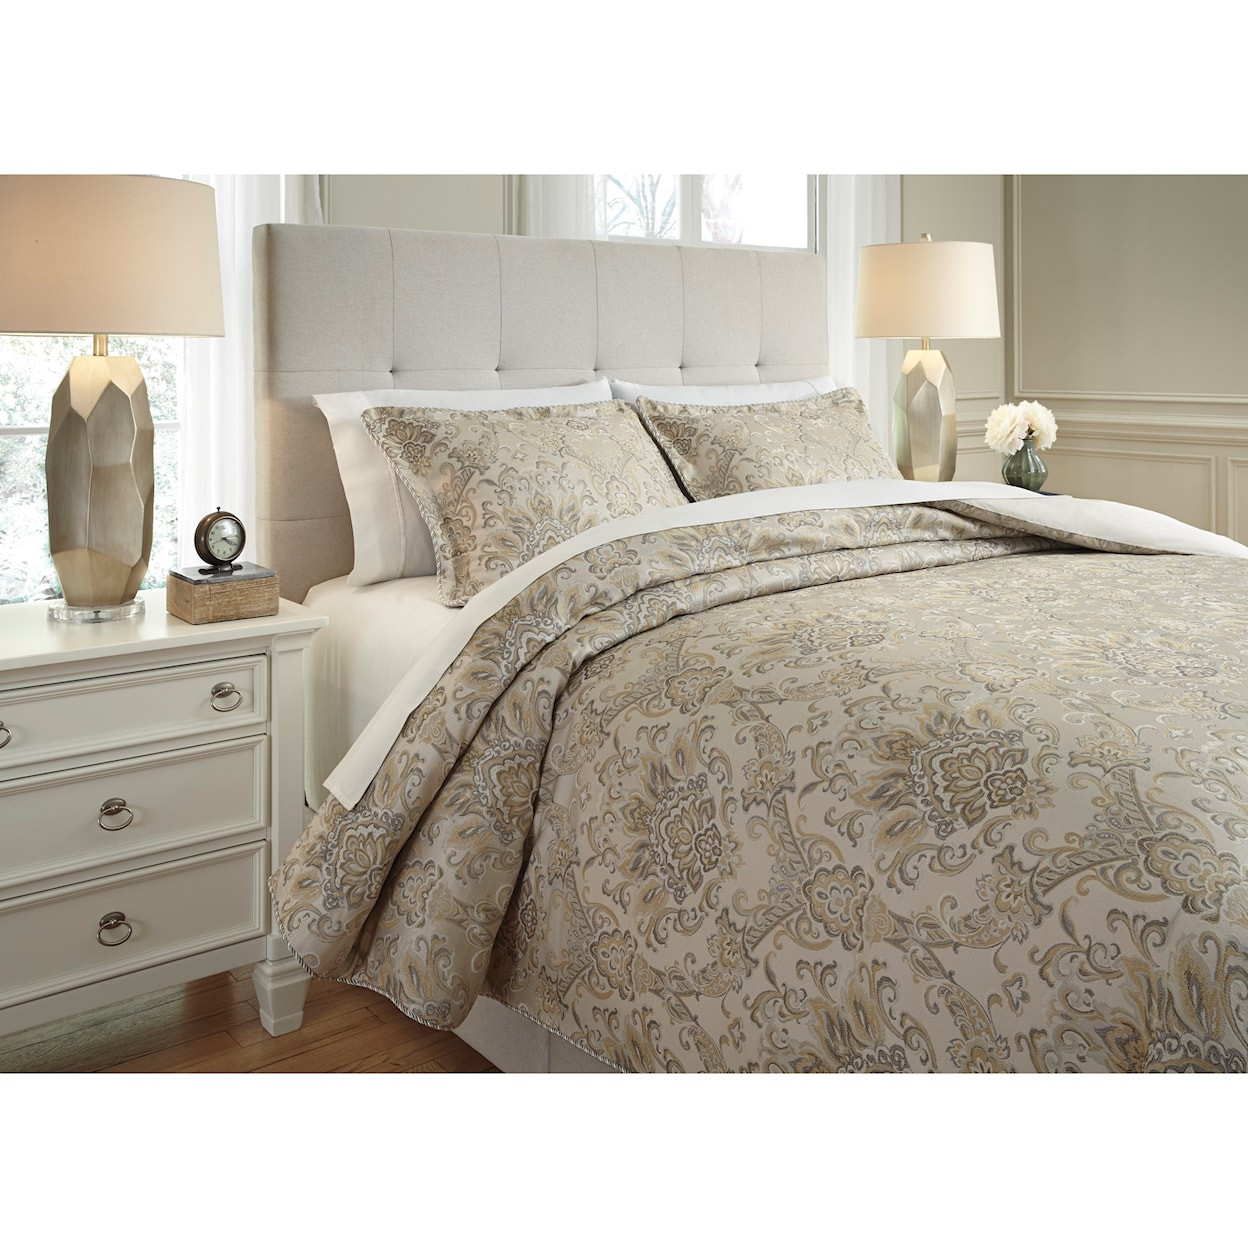 Ashley Furniture Signature Design Bedding Sets King Amil Ivory/Gold Comforter Set